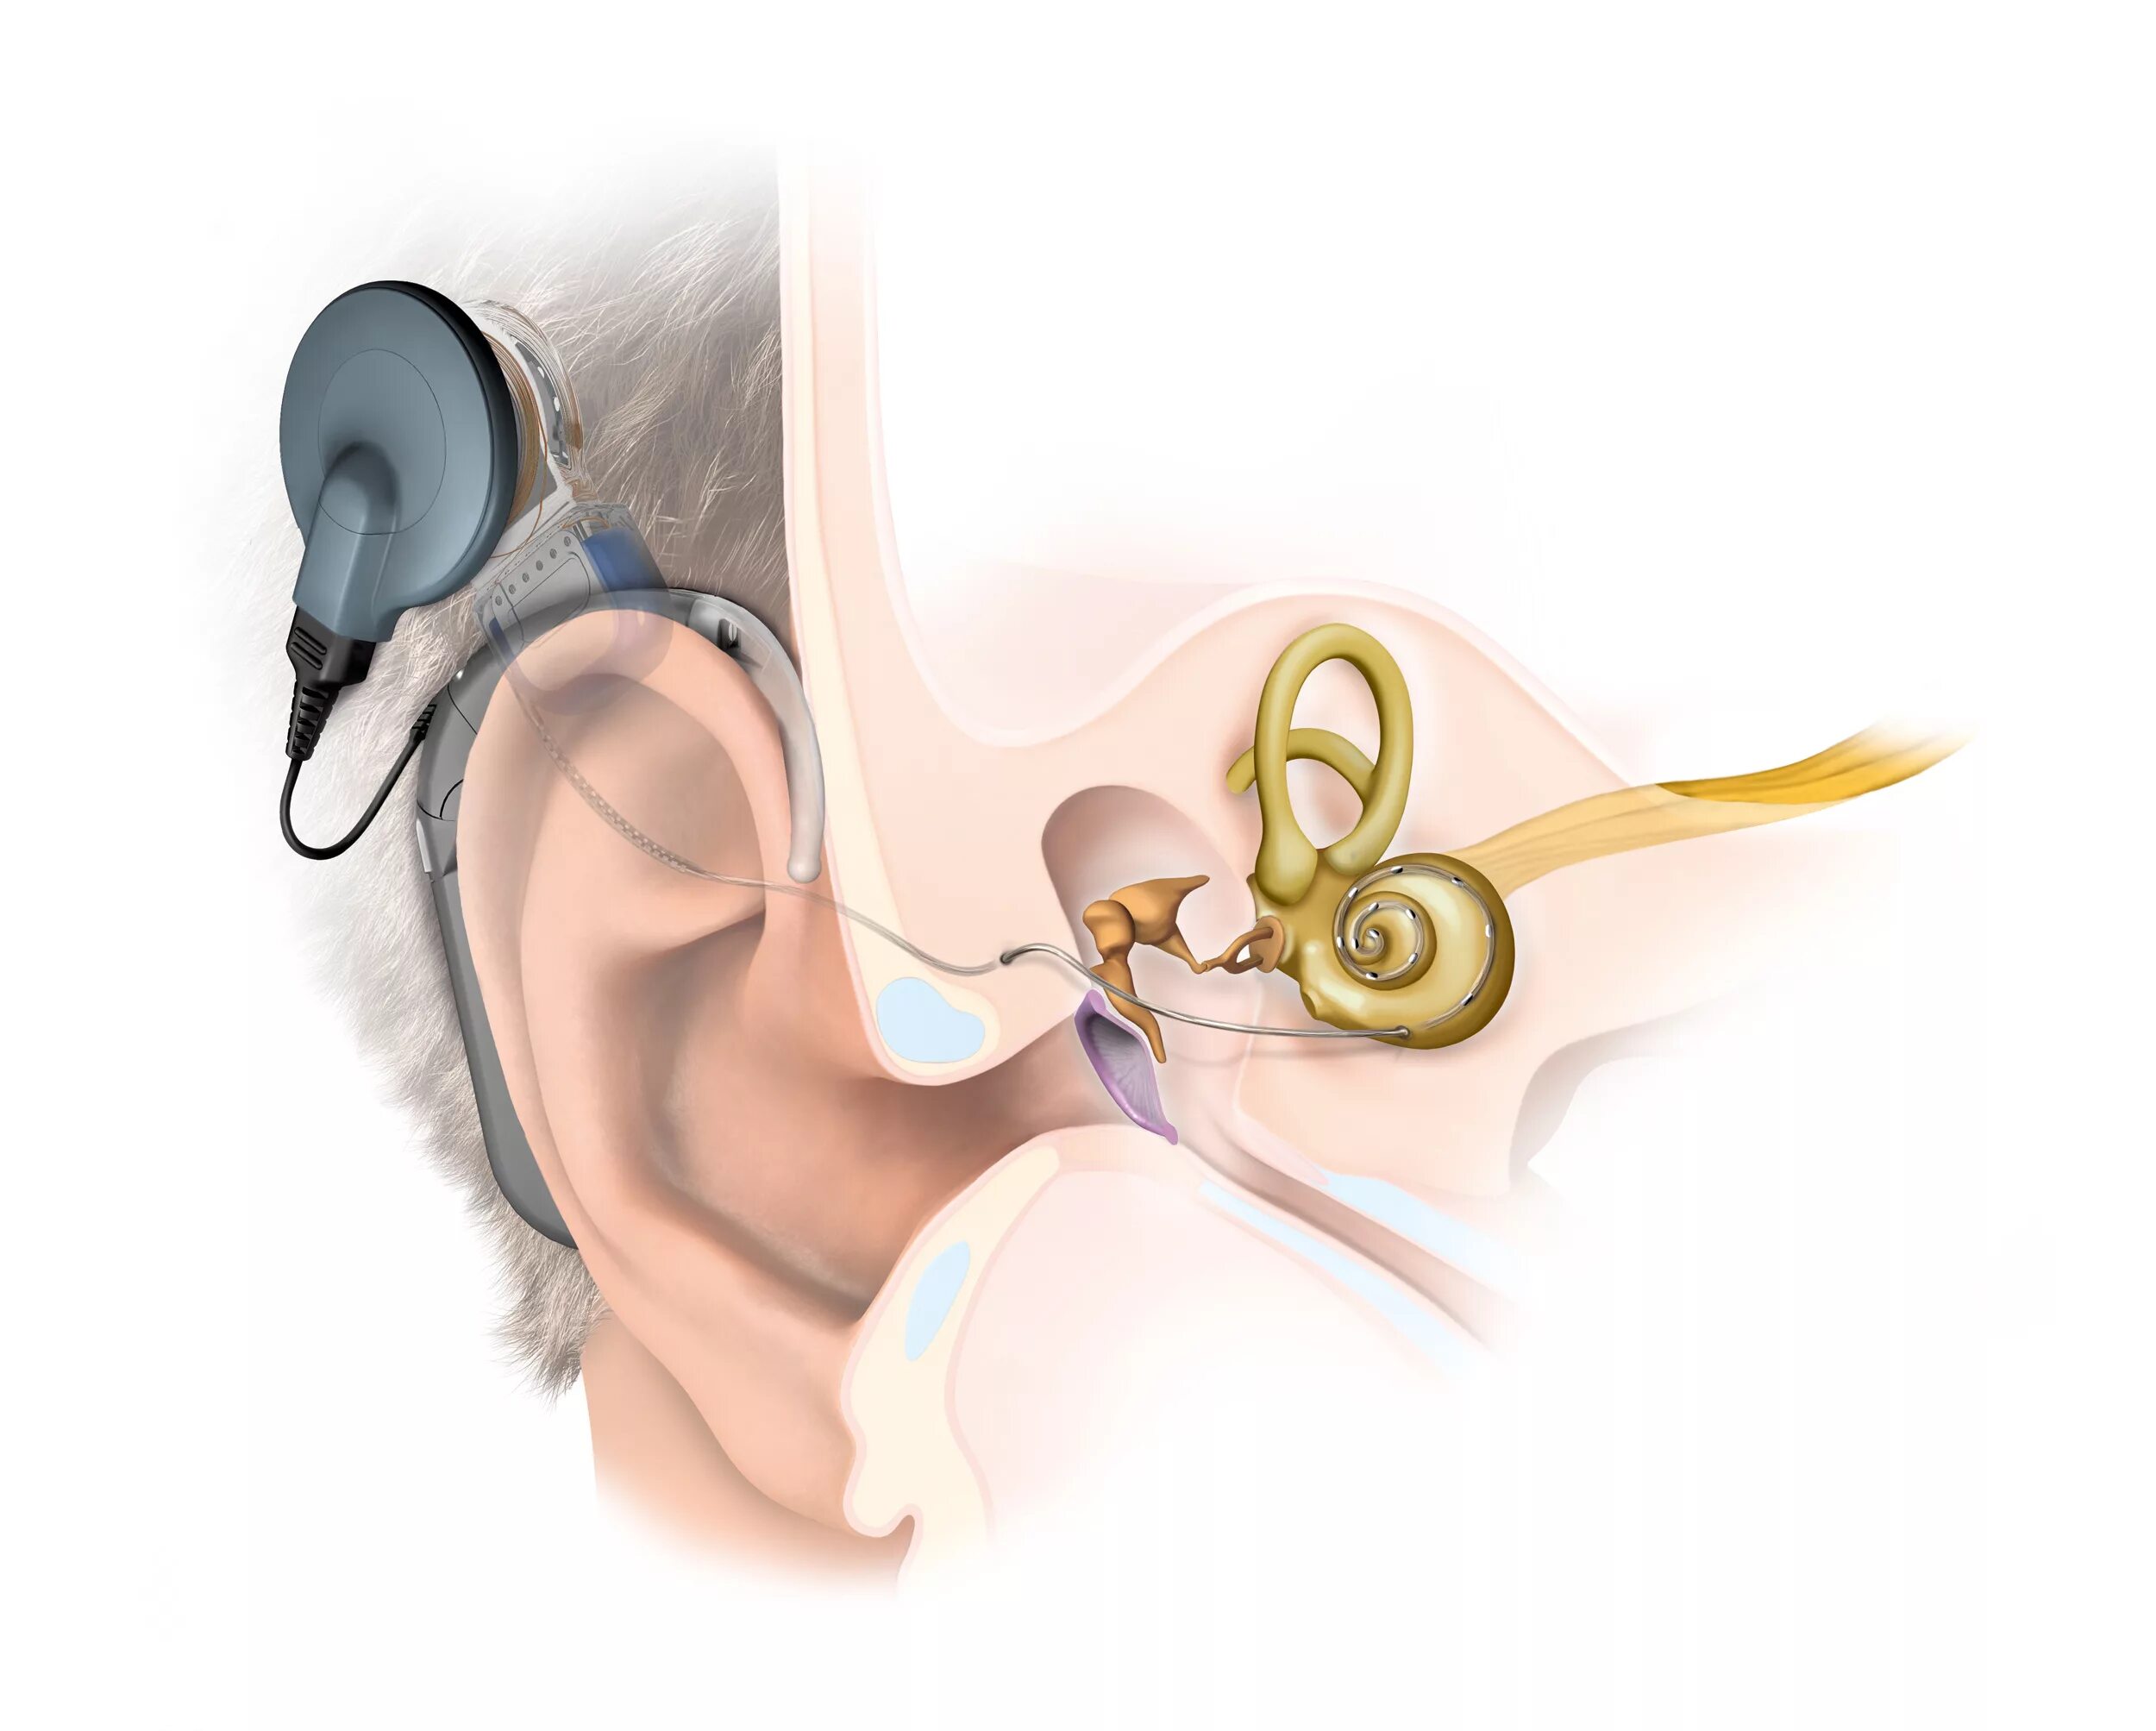 Аппарат для глухих кохлеарная имплантация. Кохлеарная имплантация Cochlear. Слуховой аппарат кохлеарный имплант операция. Операция на ухо на слух